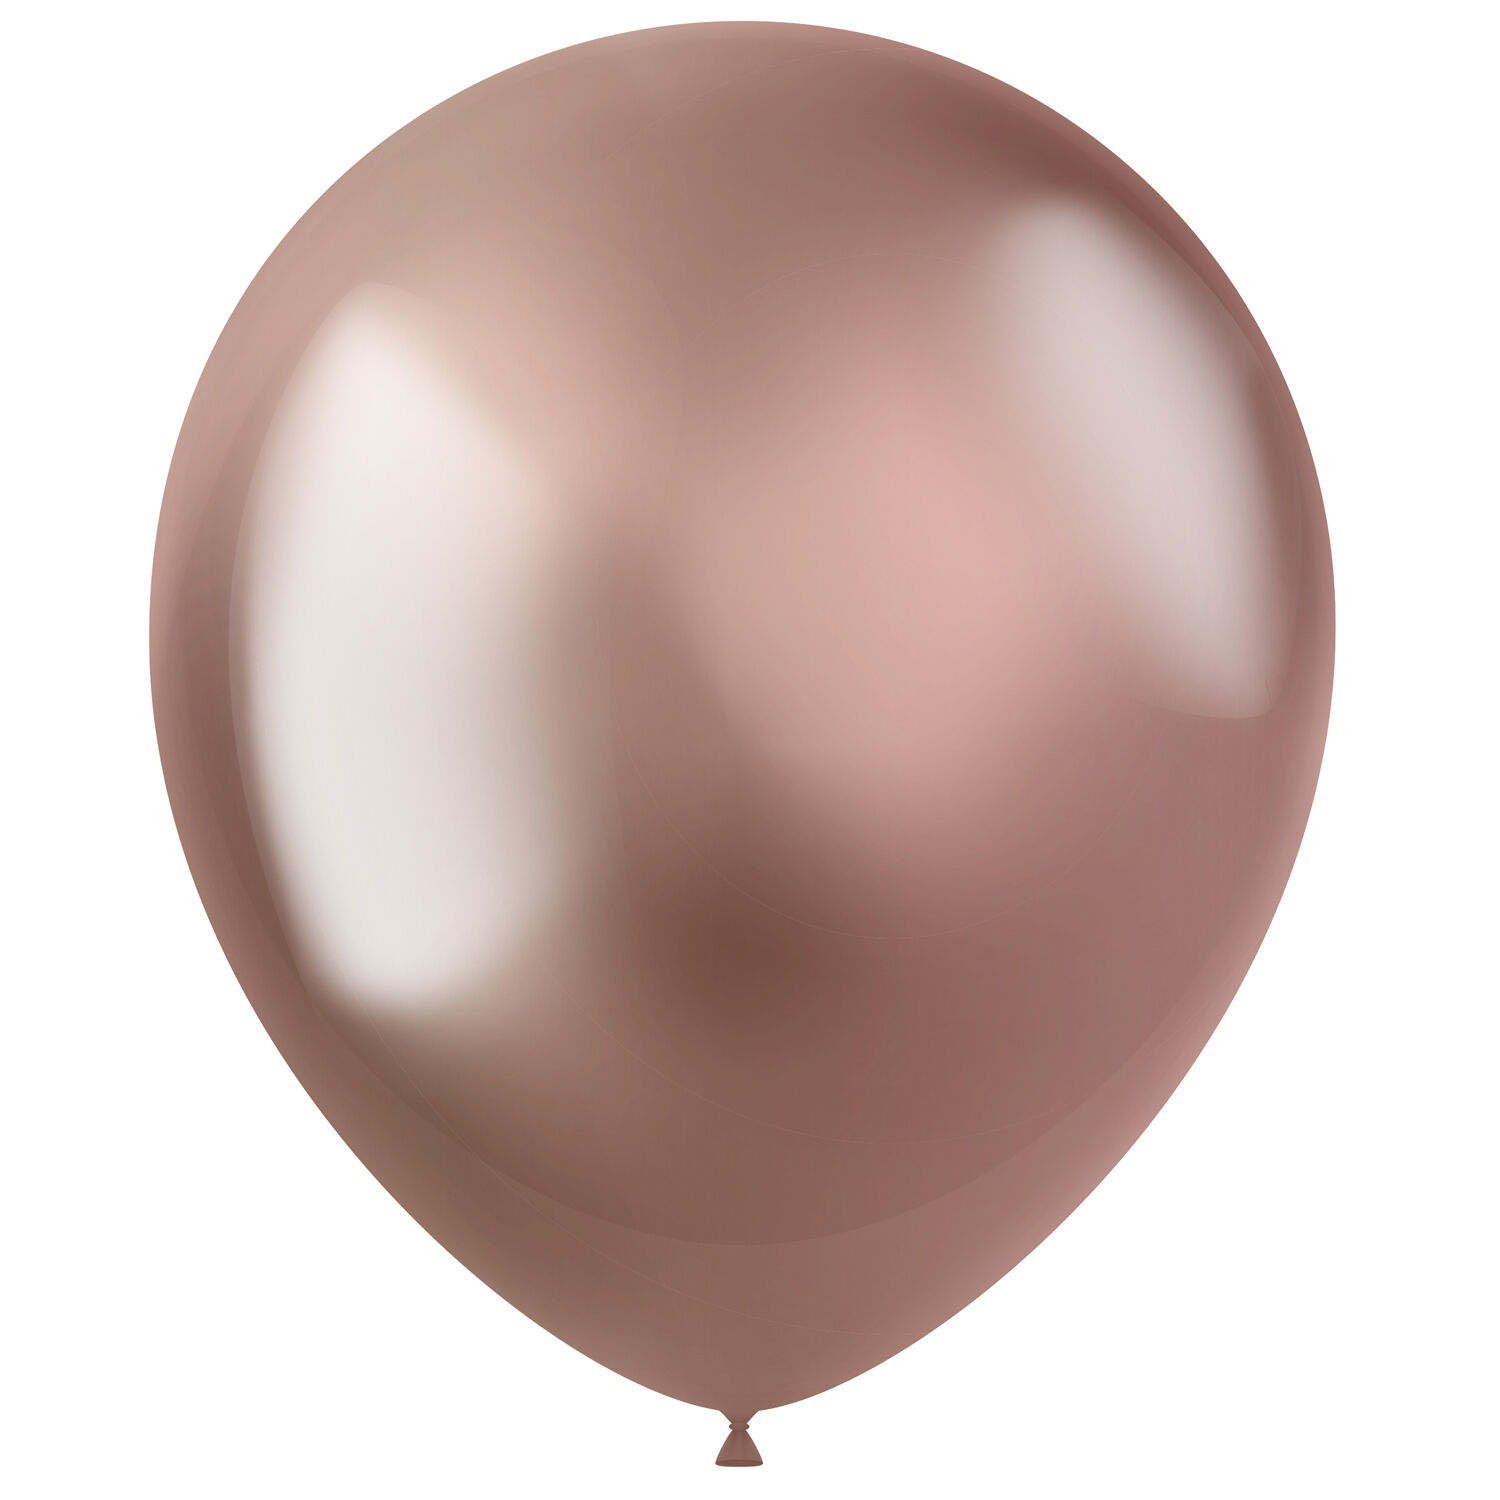 NEU Latex-Luftballons Ultra-Metallic, 33cm, rose-gold, 10 Stück